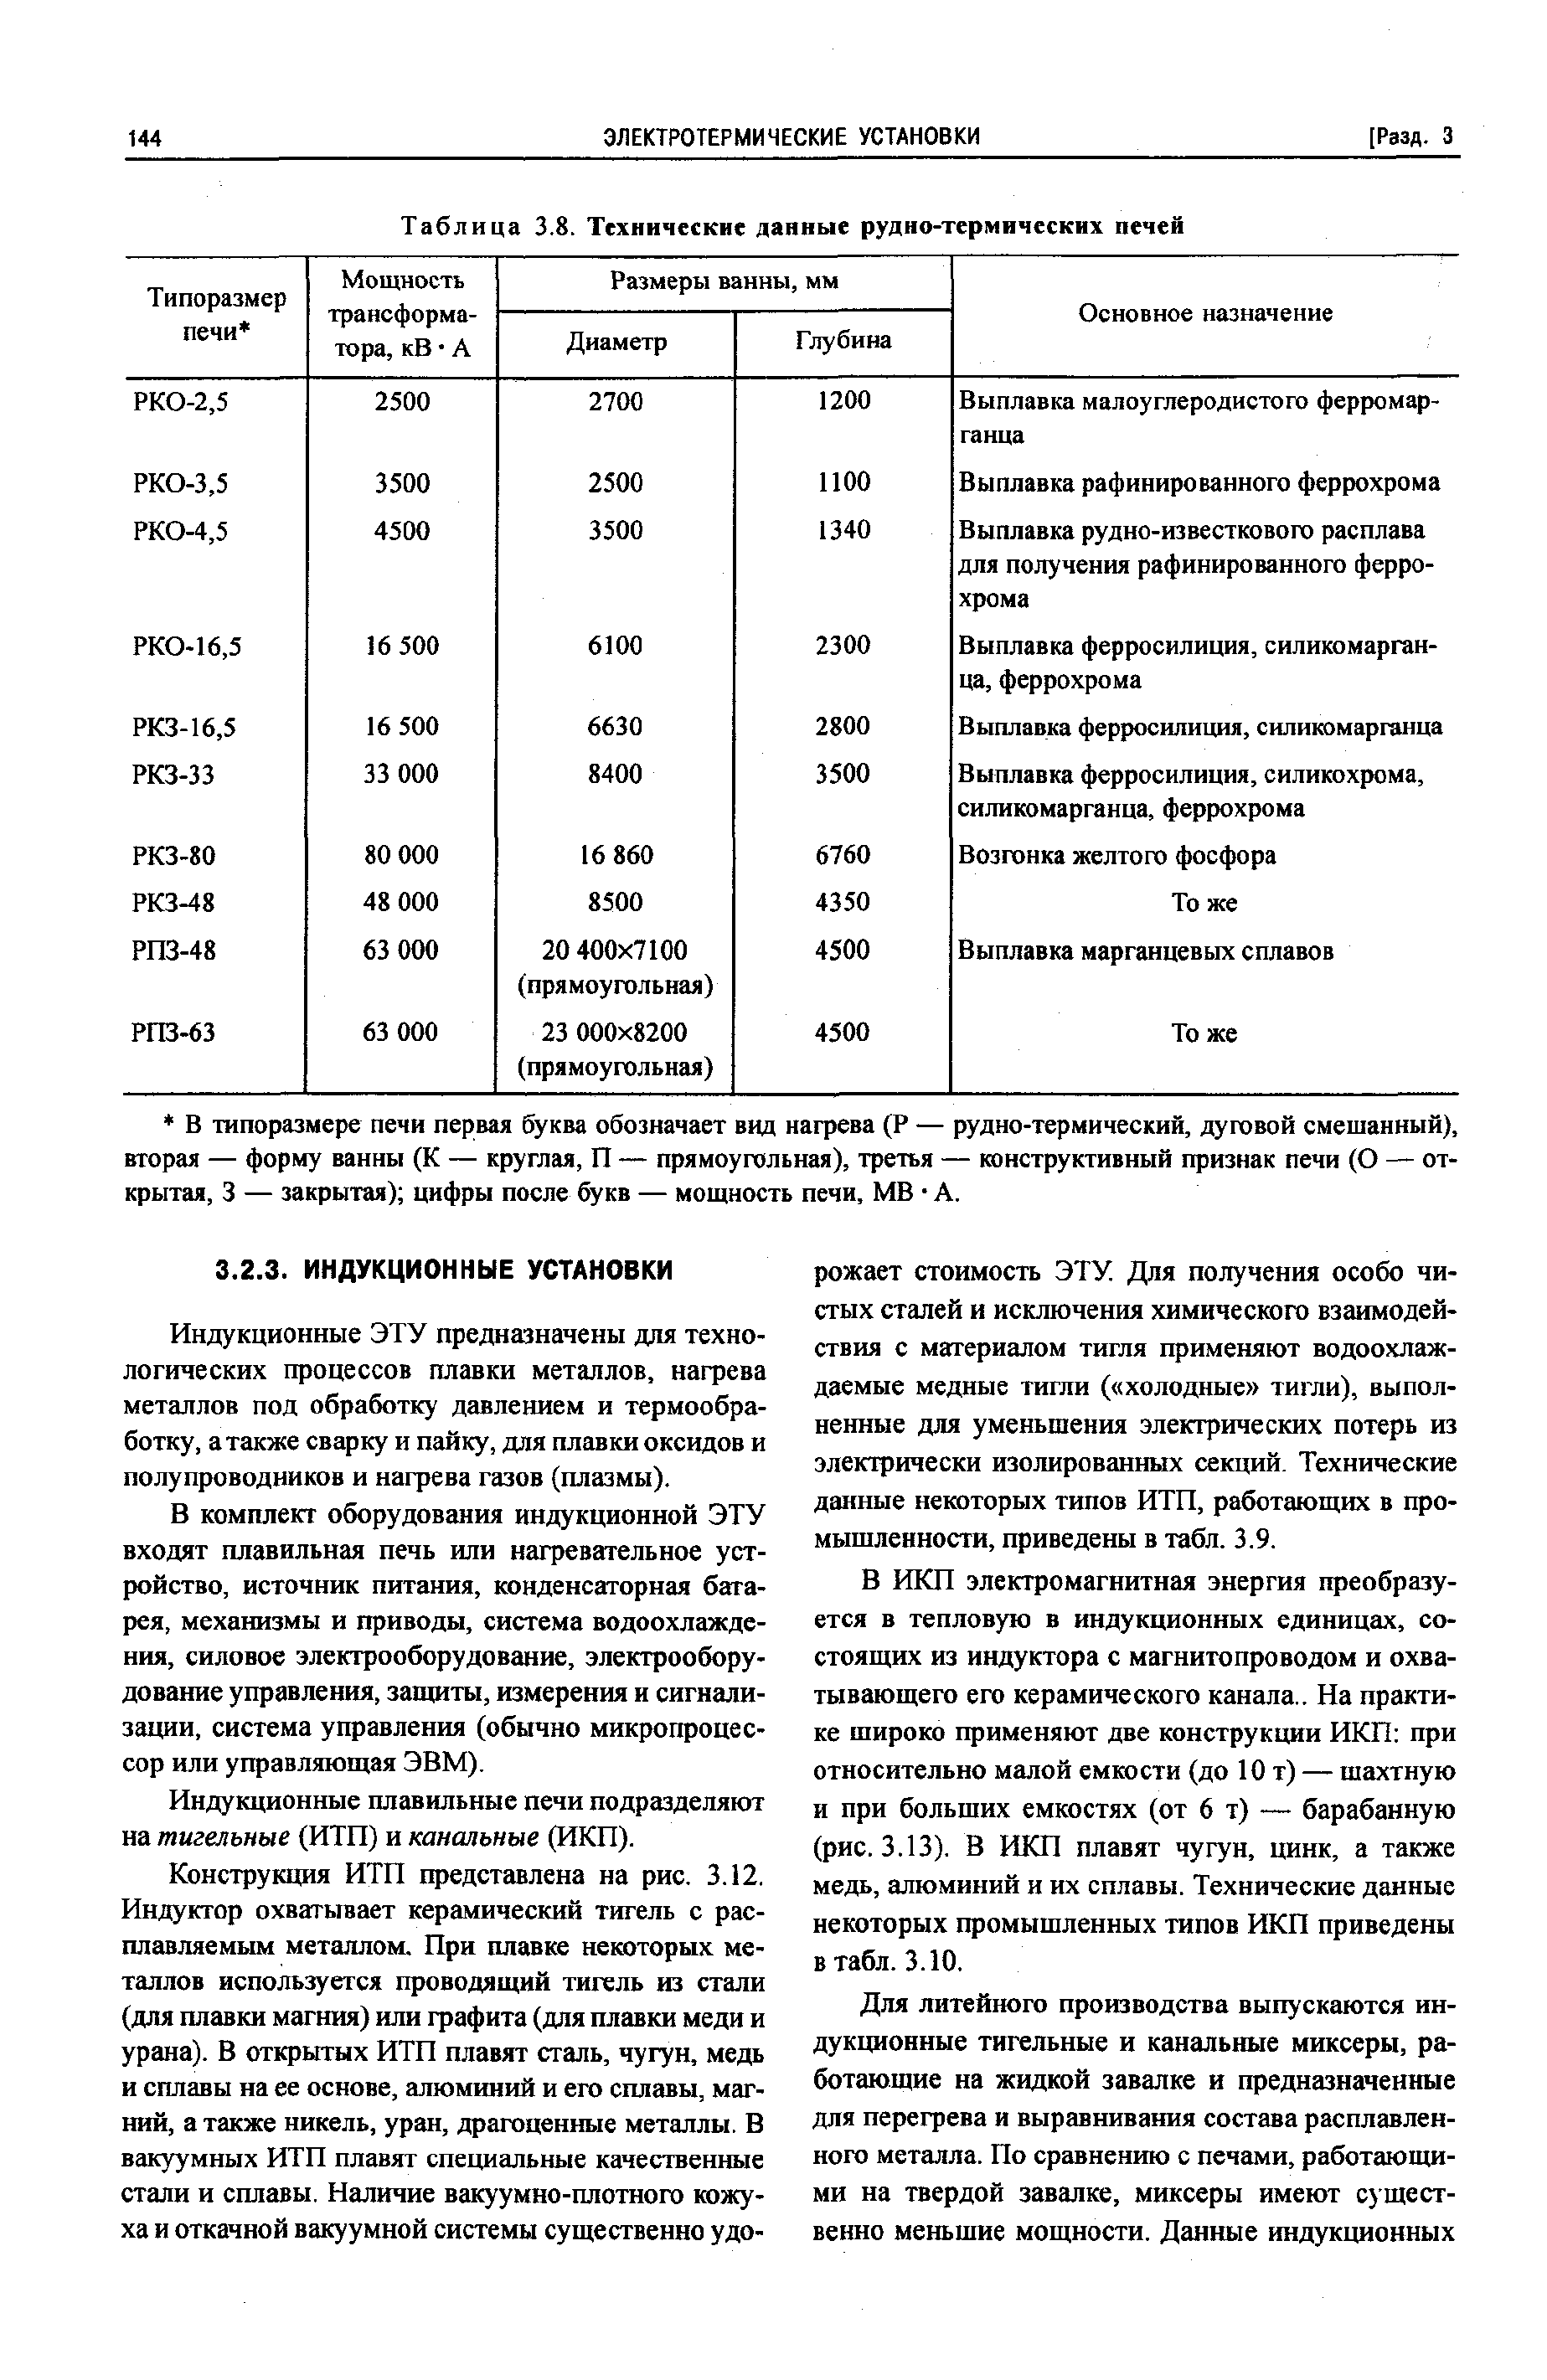 Таблица 3.8. Технические данные рудно-термических печей
